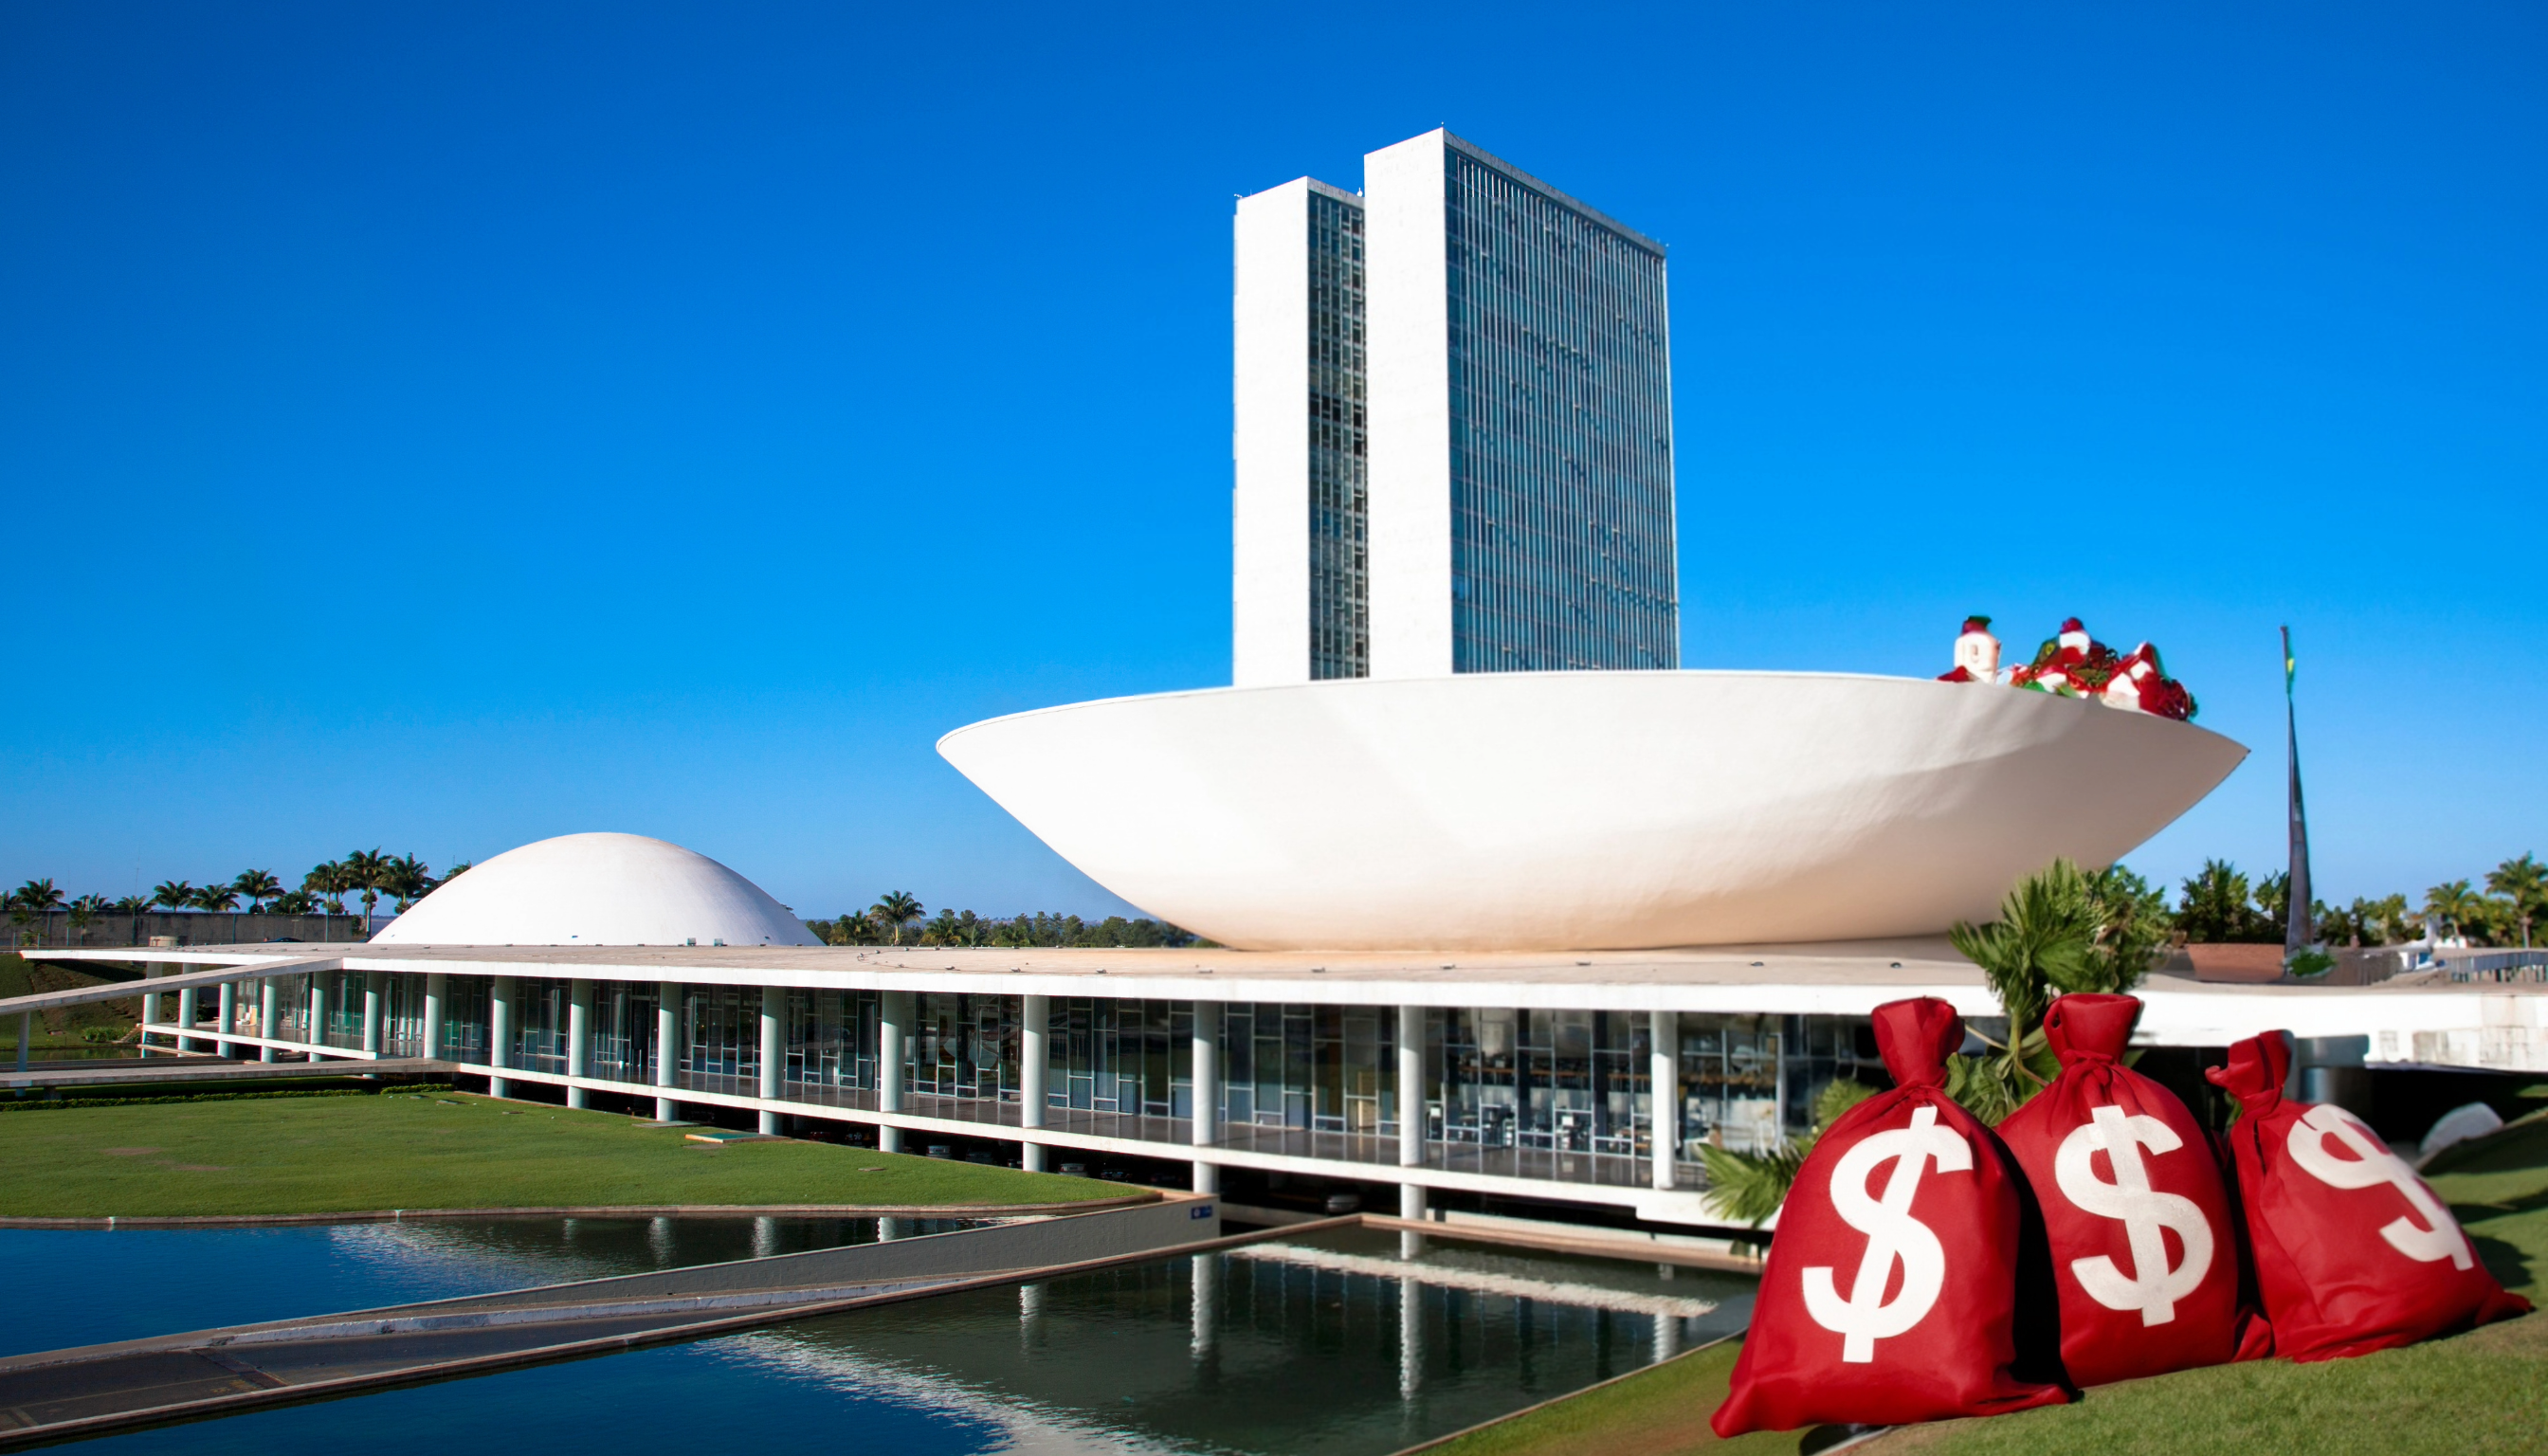 Papai Noel is coming. Brasília o mantém refém. Pedidos vexaminosos em pauta.